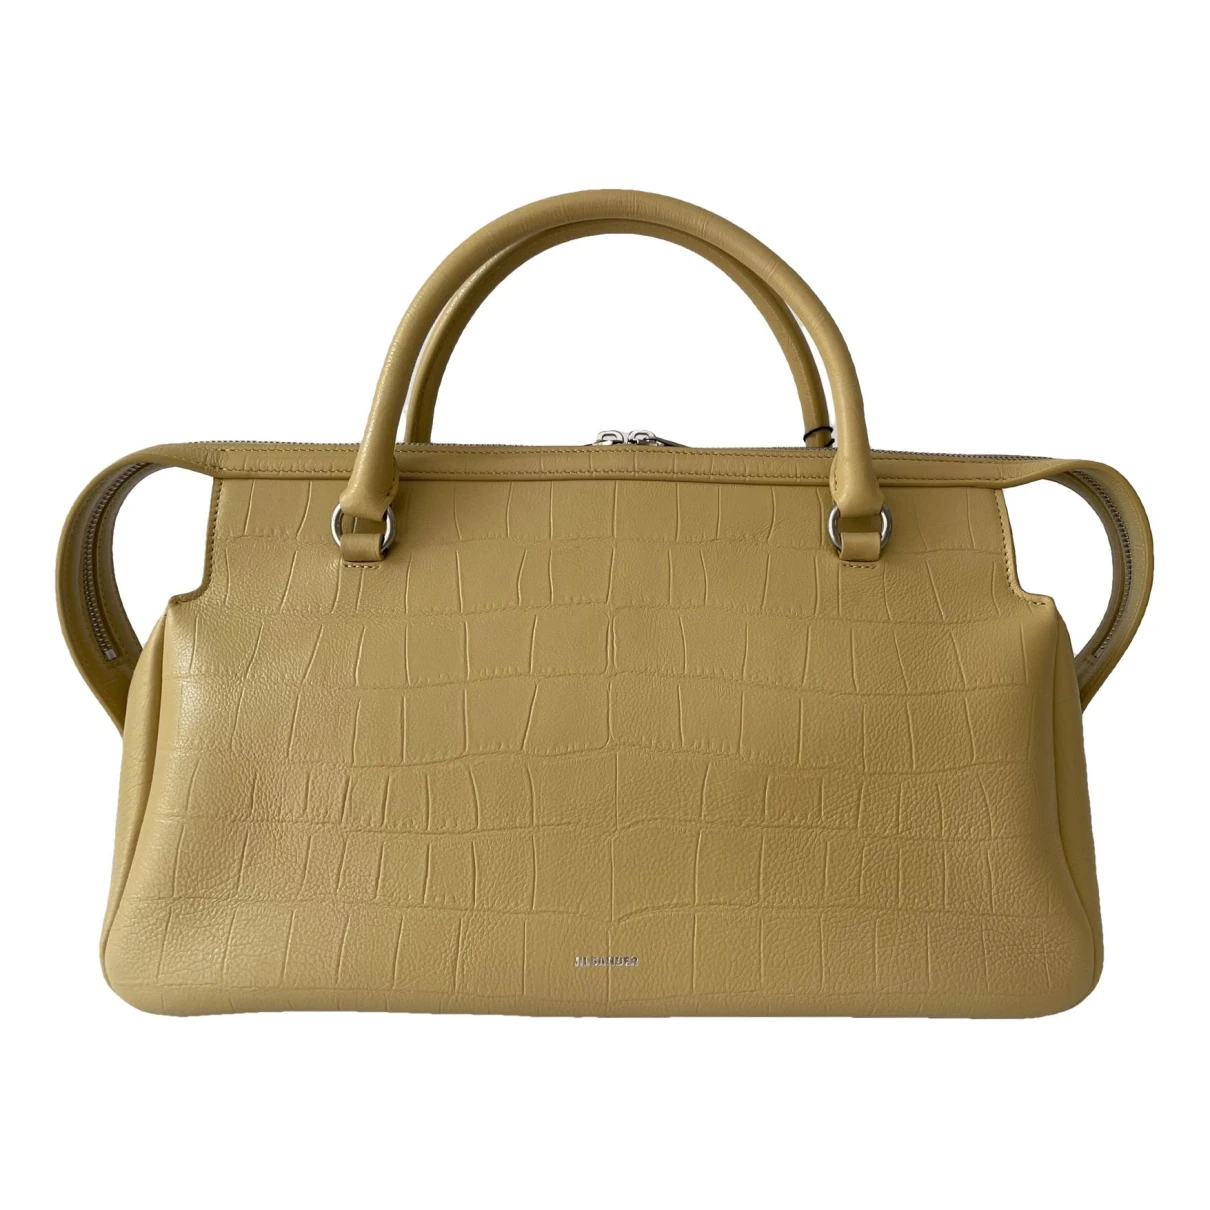 Pre-owned Jil Sander Leather Handbag In Camel